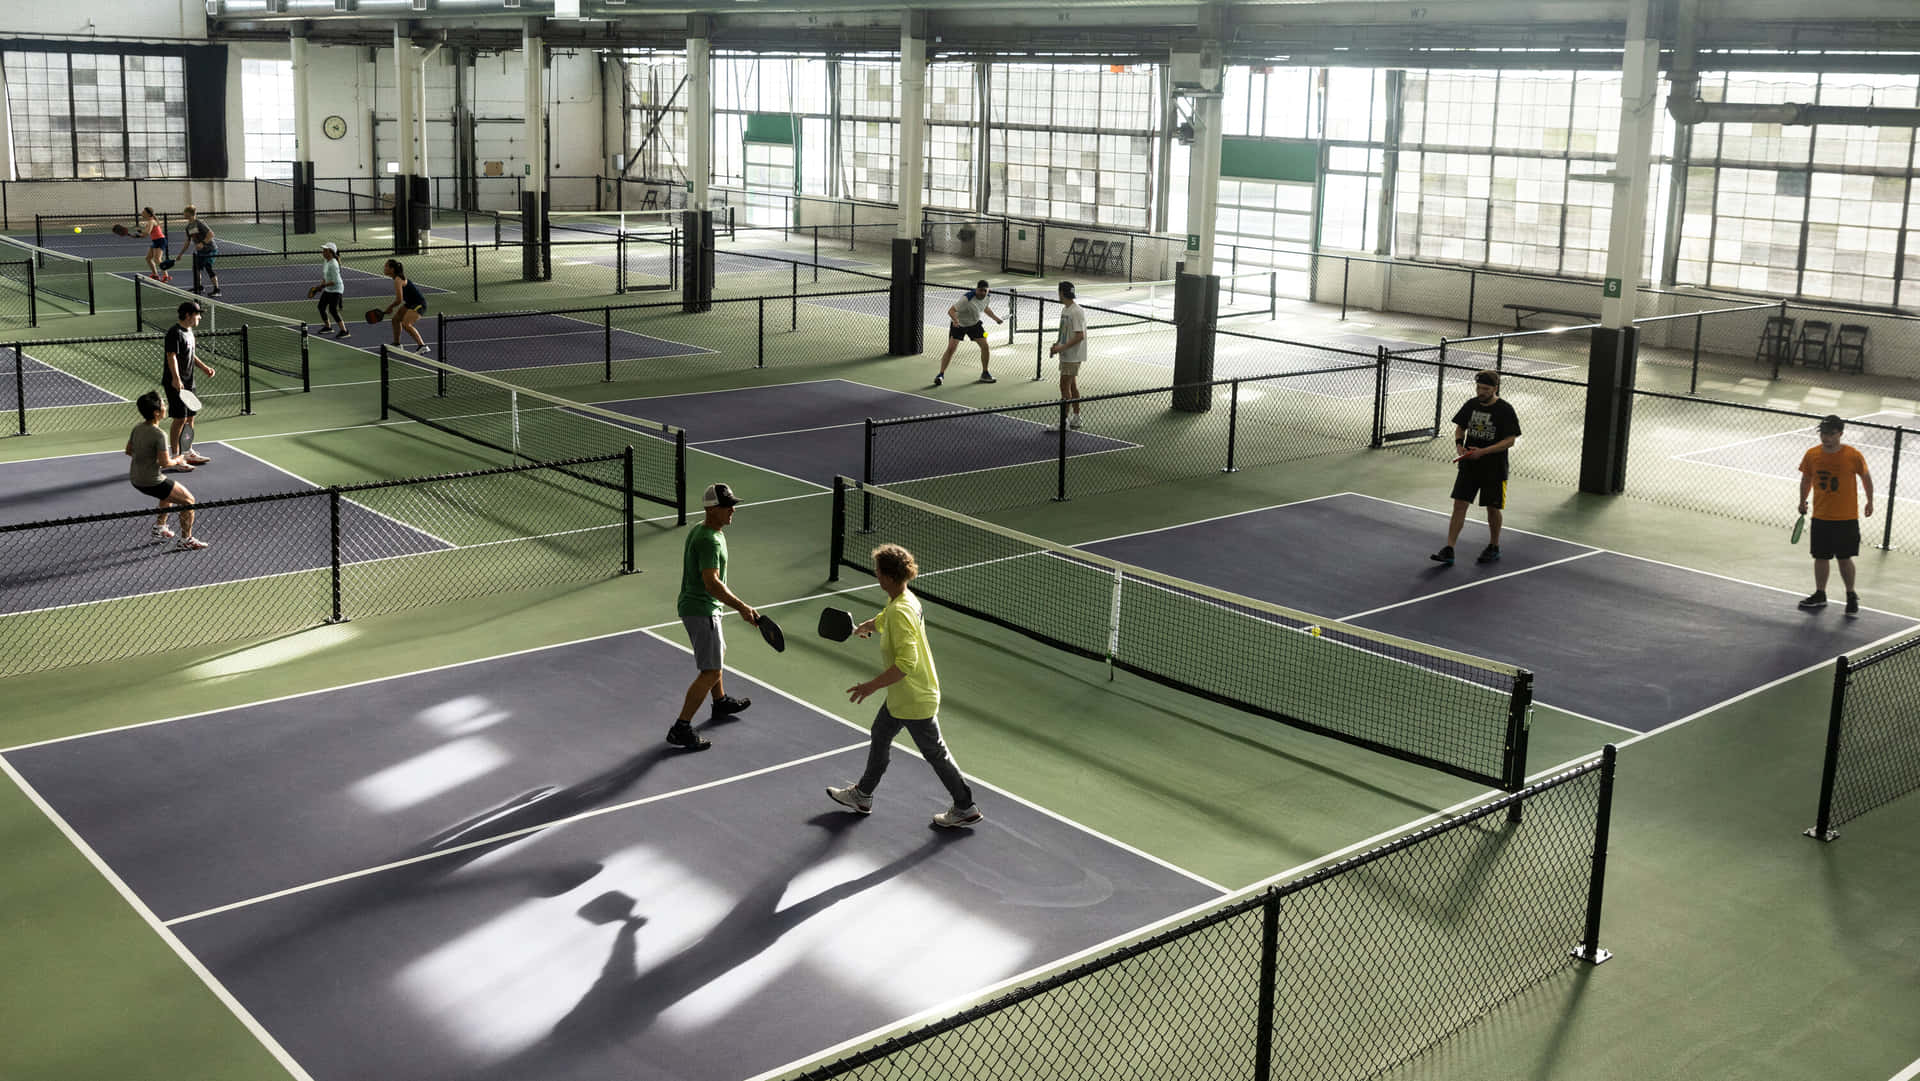 Ungruppo Di Persone Che Giocano A Tennis In Una Cornice Al Chiuso